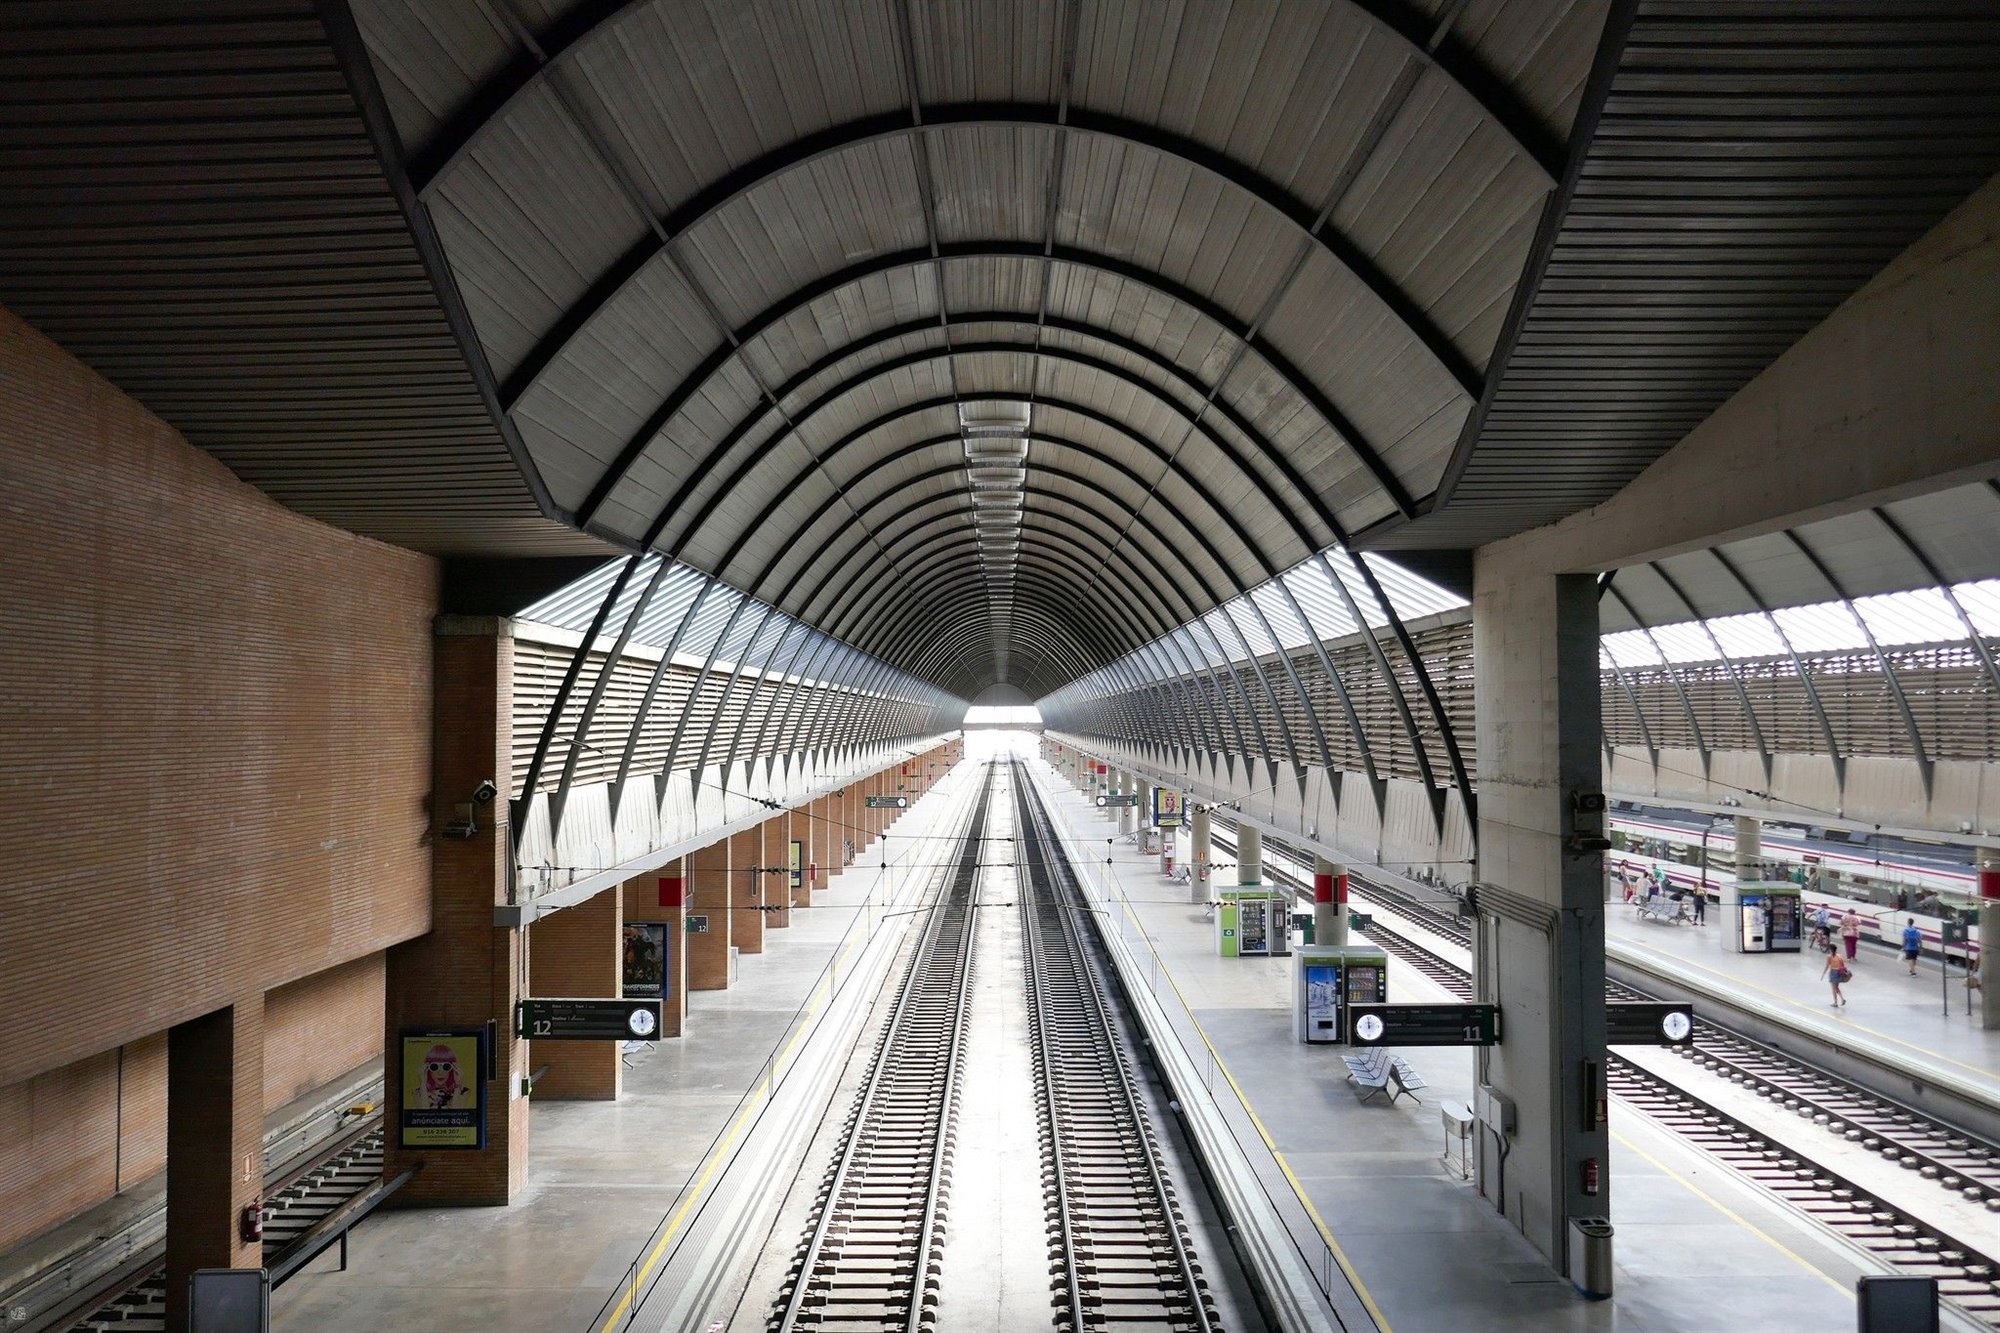 Estación de Santa Justa de Cruz y Ortiz en Sevilla